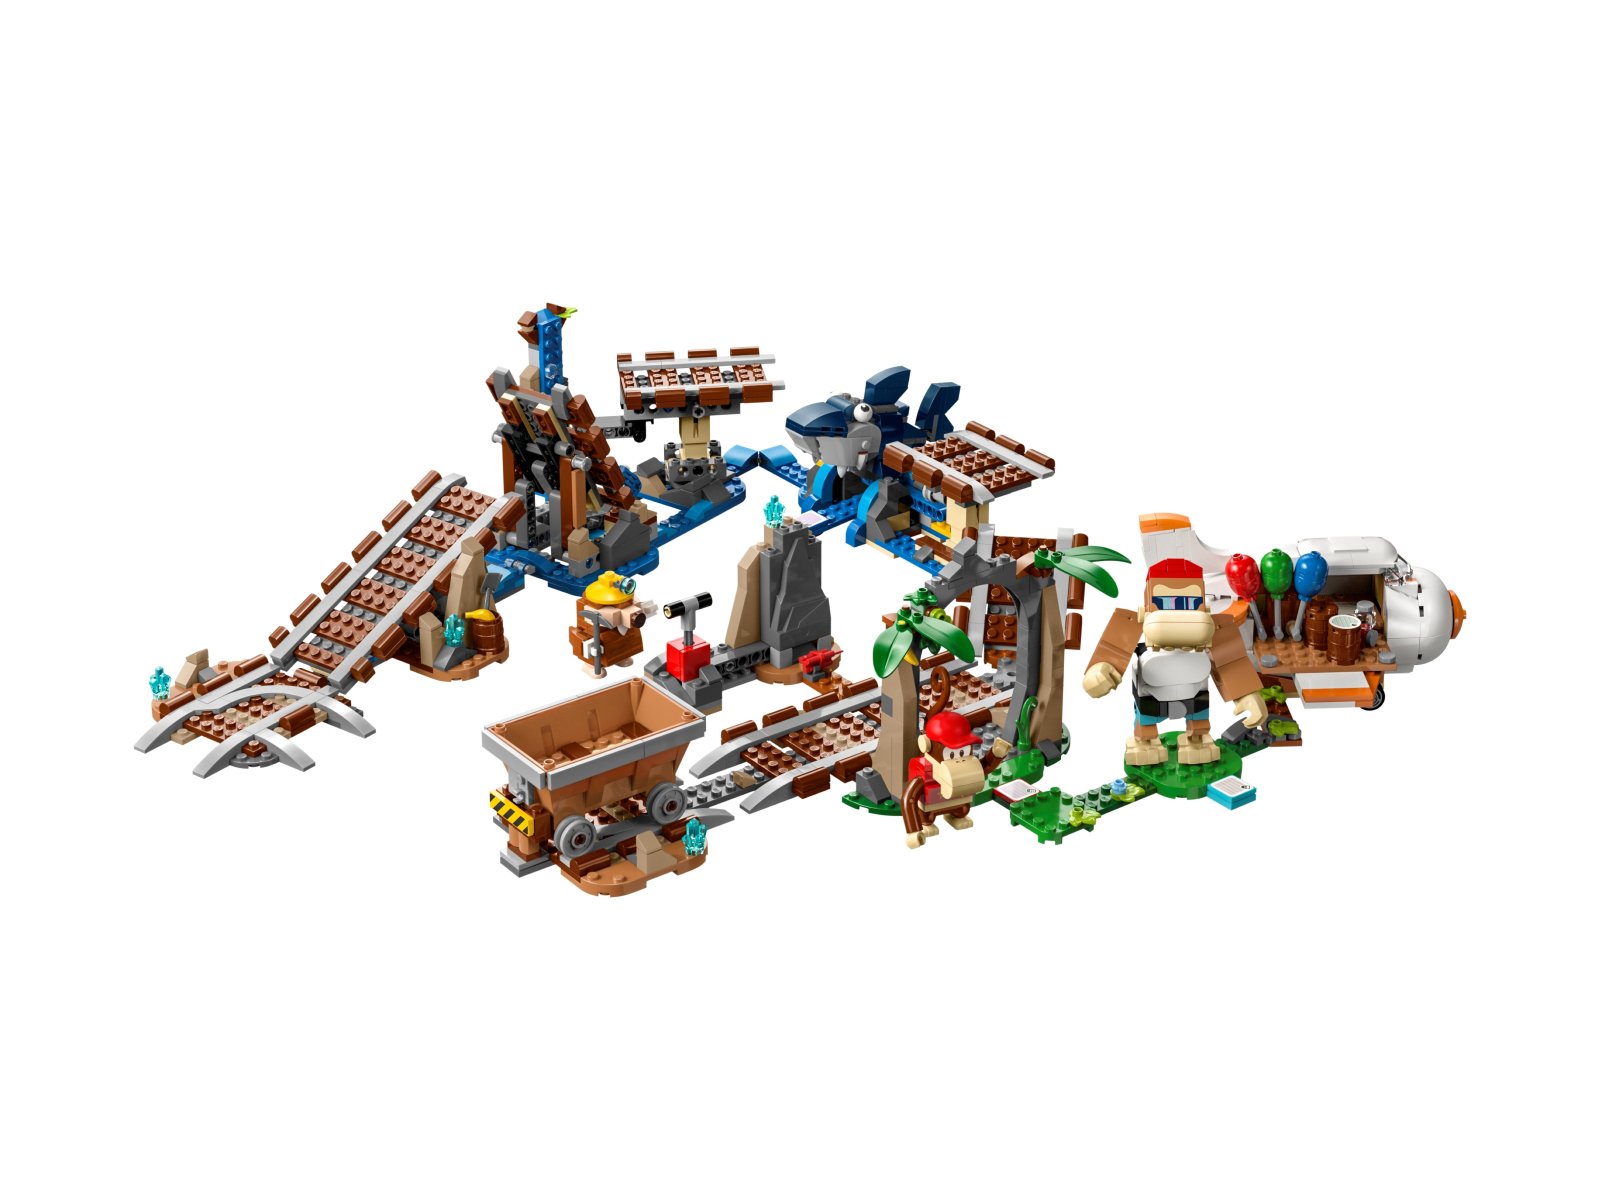 LEGO Super Mario Przejażdżka wagonikiem Diddy Konga — zestaw rozszerzający 71425